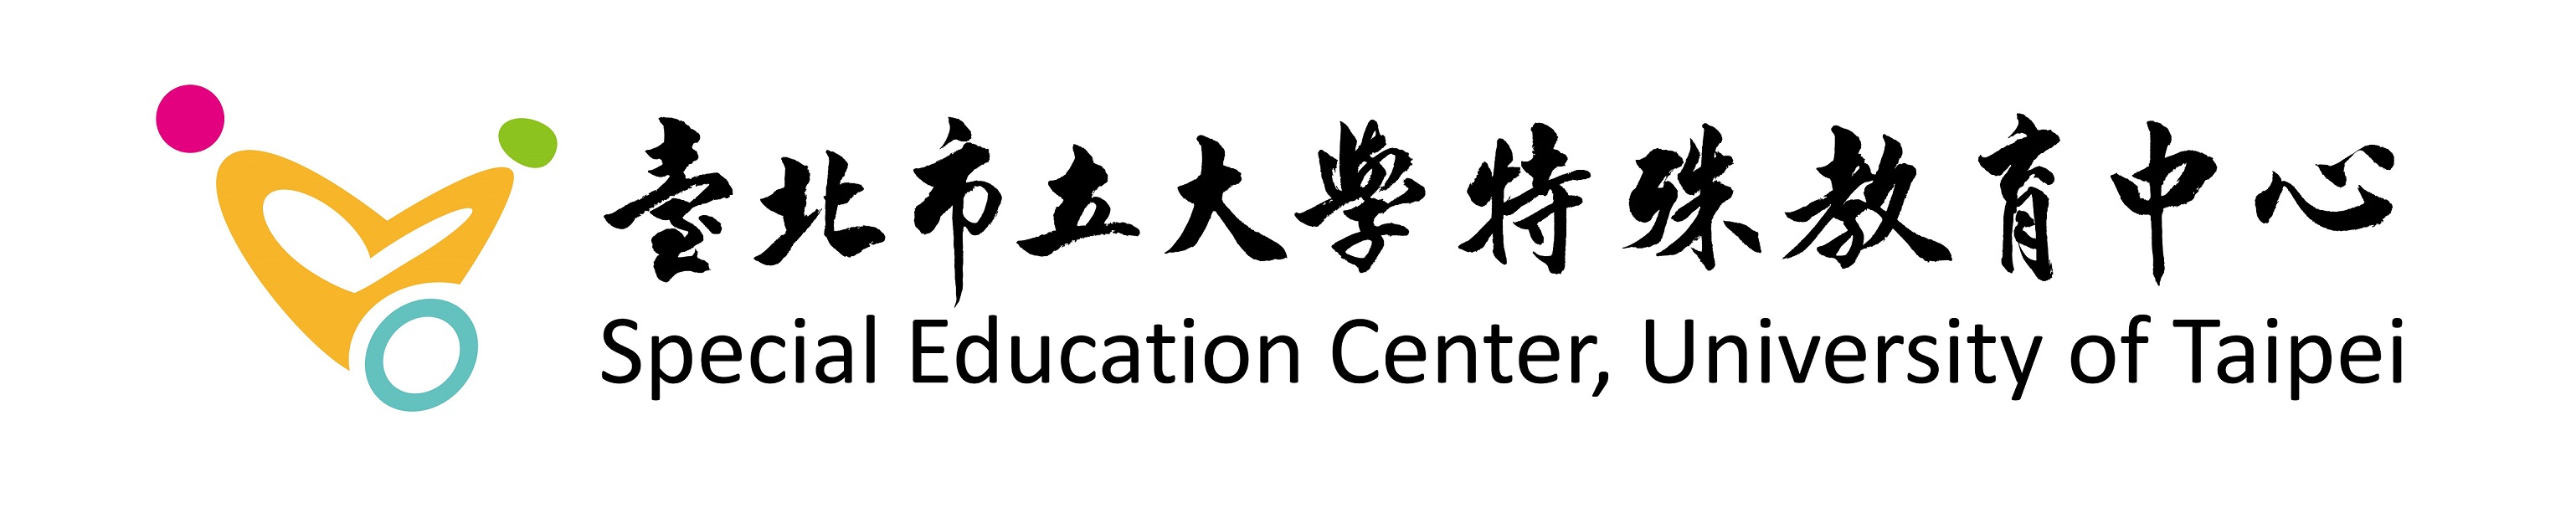 Special Education Center, University of Taipei